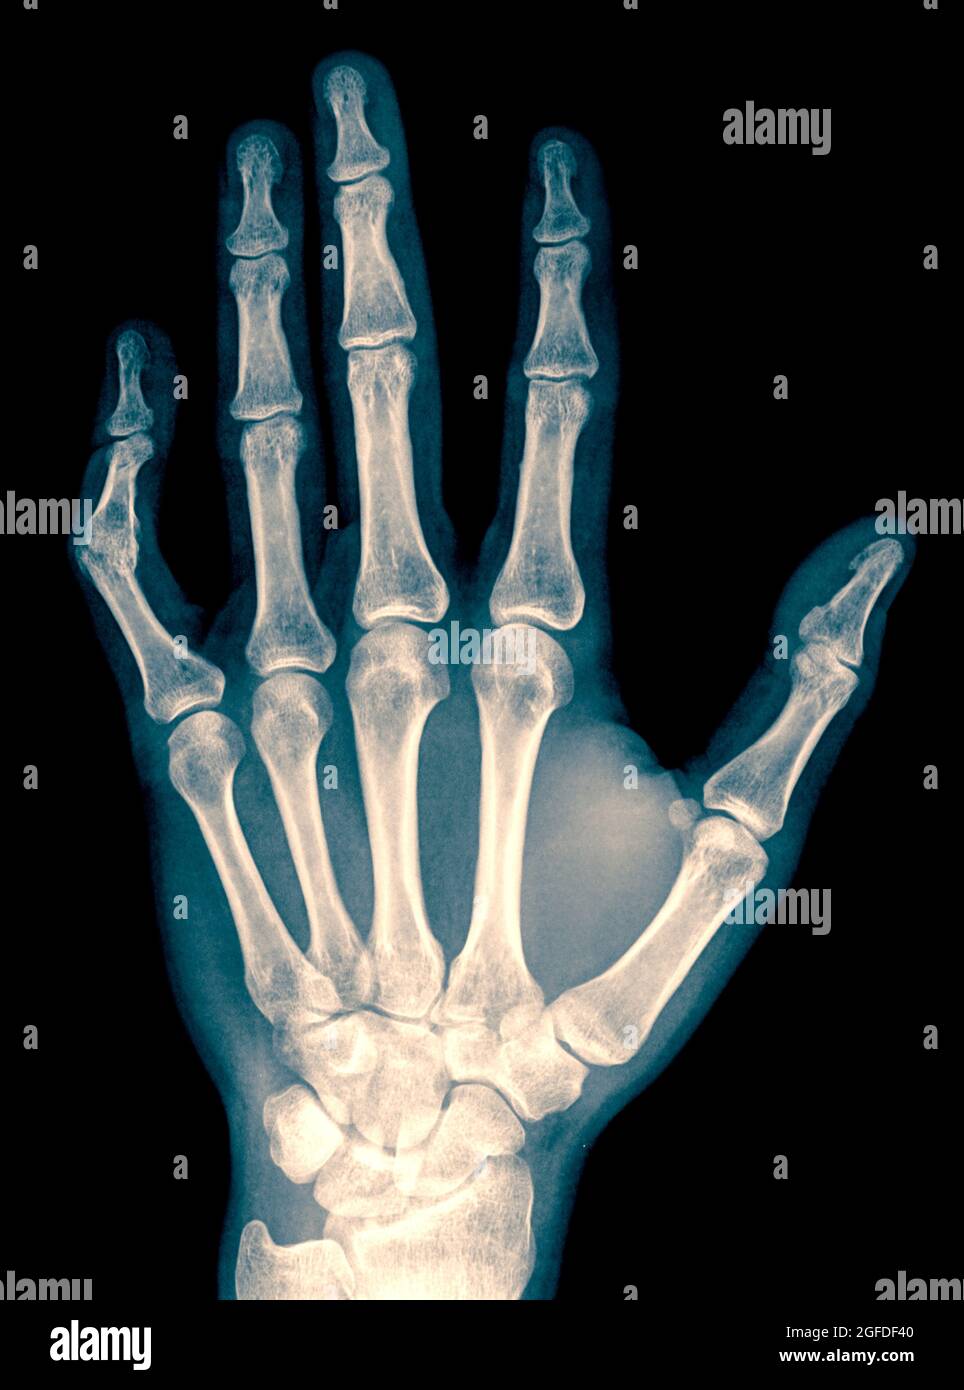 Röntgenaufnahme von Handgelenk, Hand und Fingern eines 34 Jahre alten männlichen Patienten mit einem verrenkten linken Daumen aufgrund von Pralinusbildung Stockfoto